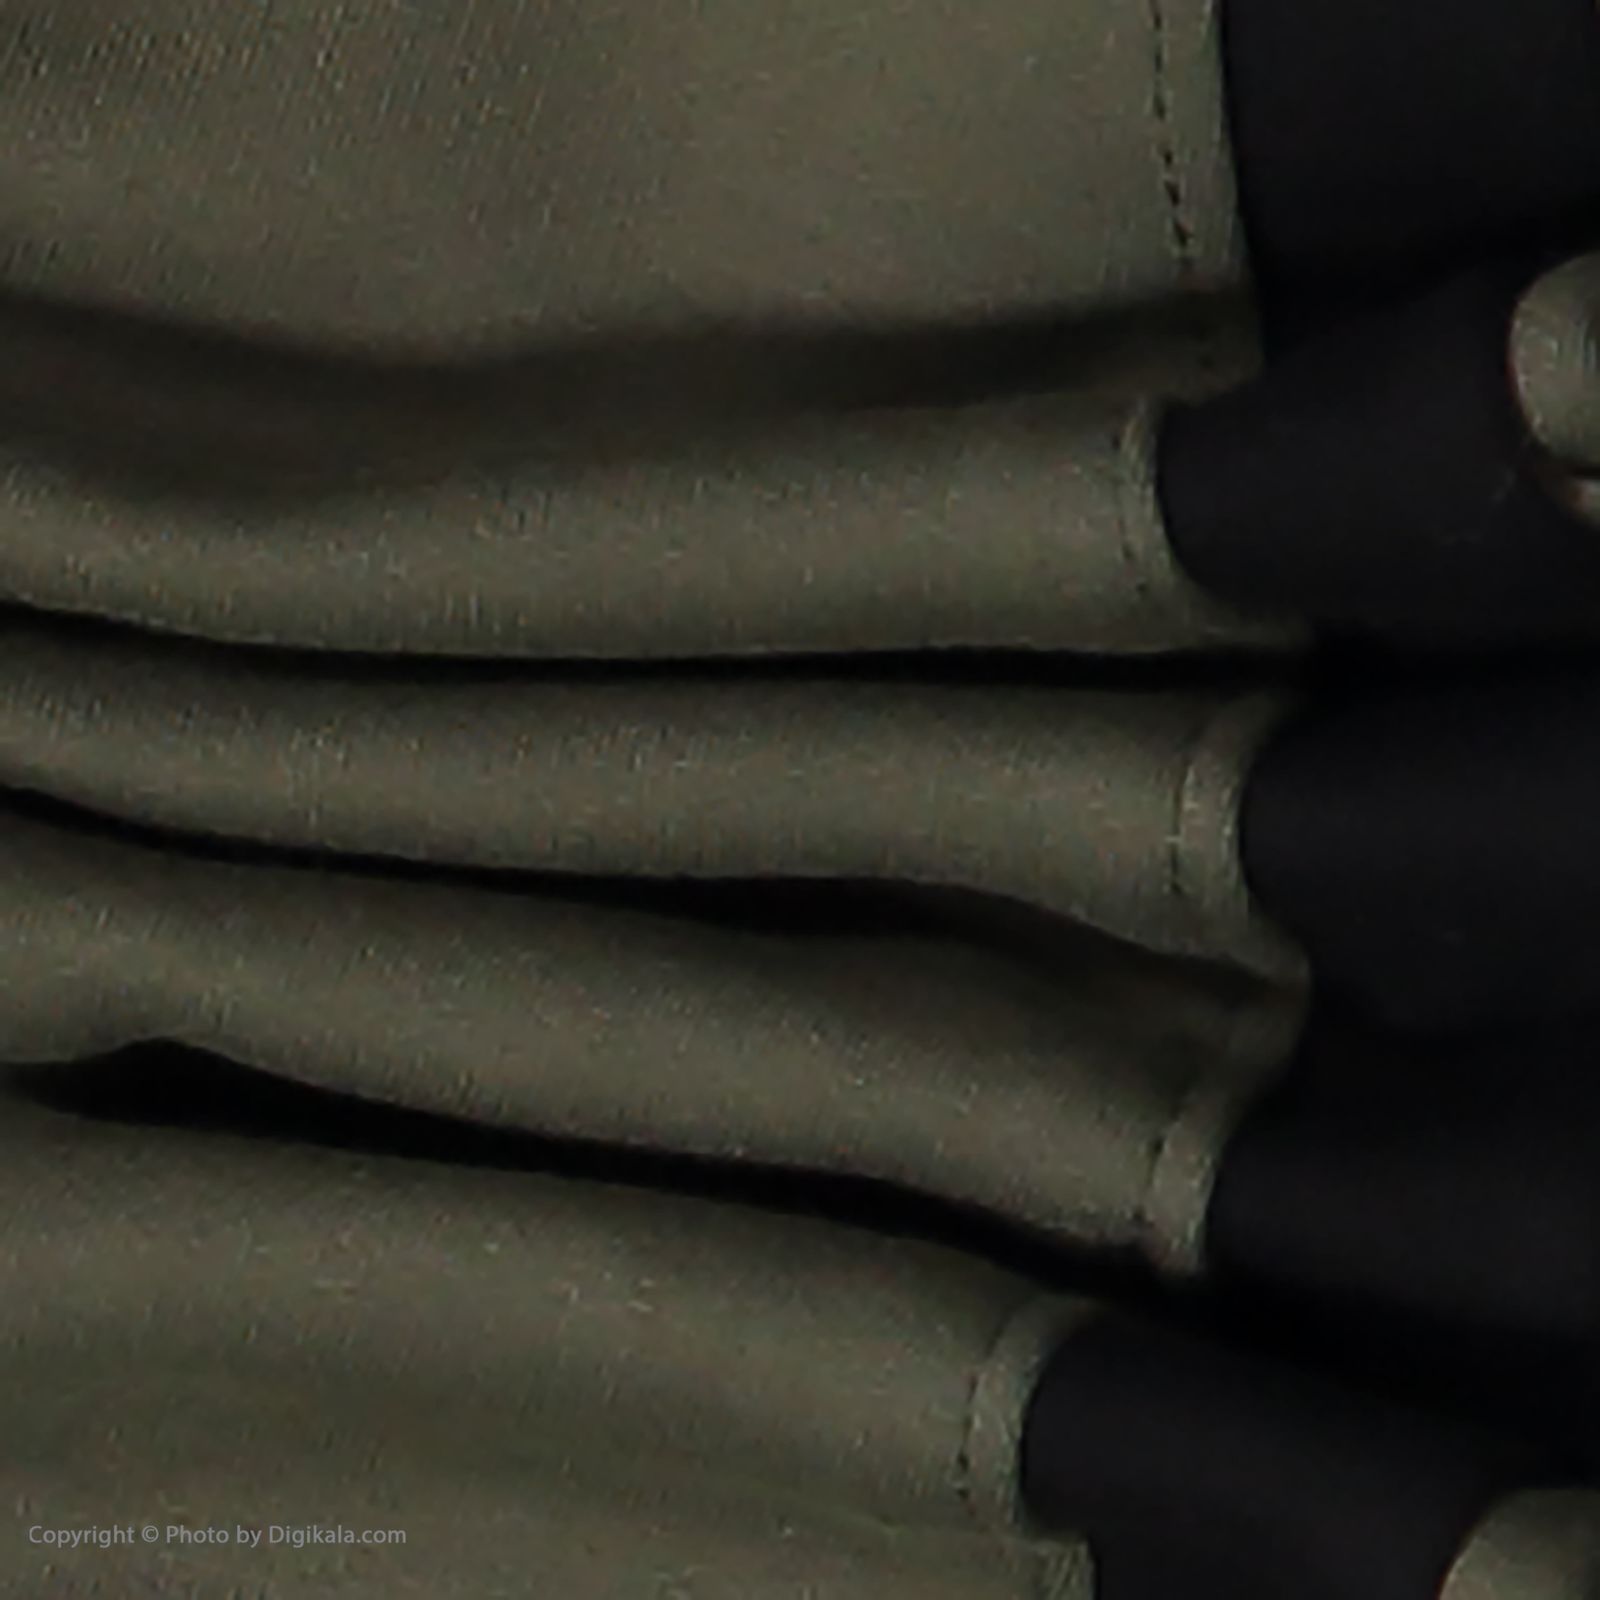 ست تی شرت و شلوار پسرانه نامدارز مدل 2021106-49 - سبز ارتشی - 5